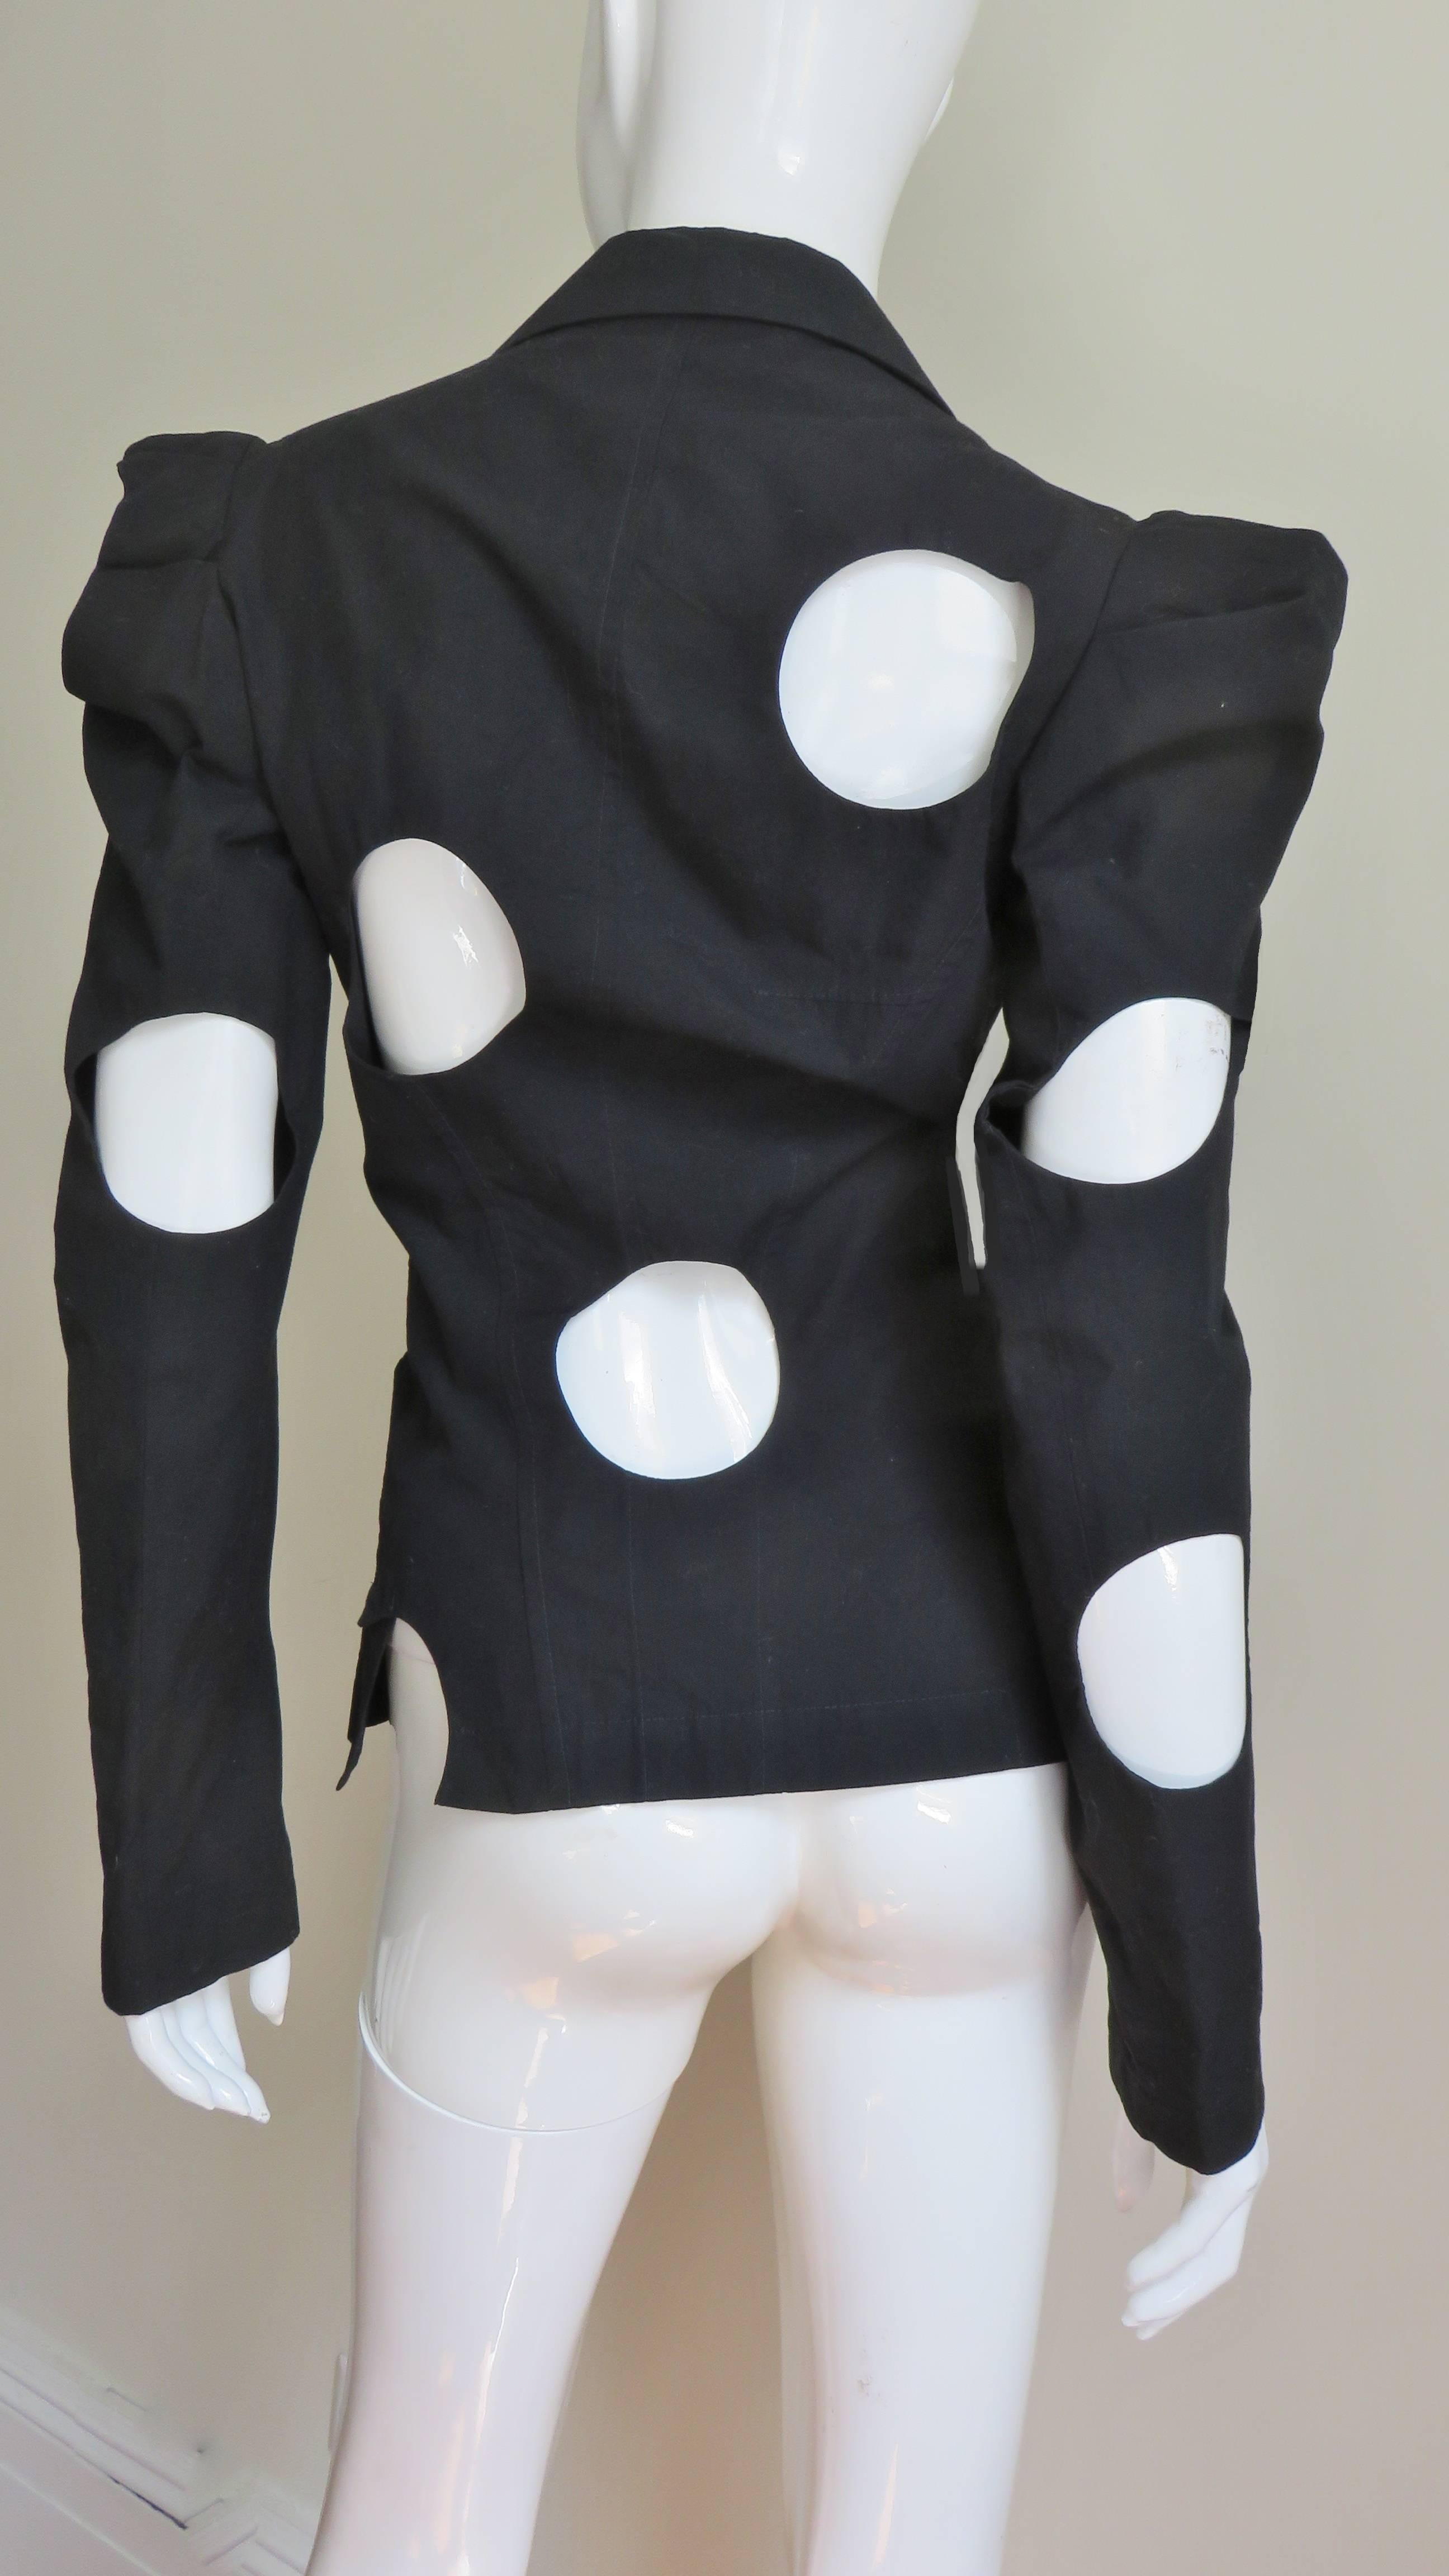 Une fabuleuse veste en coton noir signée Yohji Yamamoto.  Il présente des revers en pointe, une fermeture à deux boutons sur le devant et de remarquables découpes en cercle placées de manière aléatoire.  Chaque cercle est magnifiquement